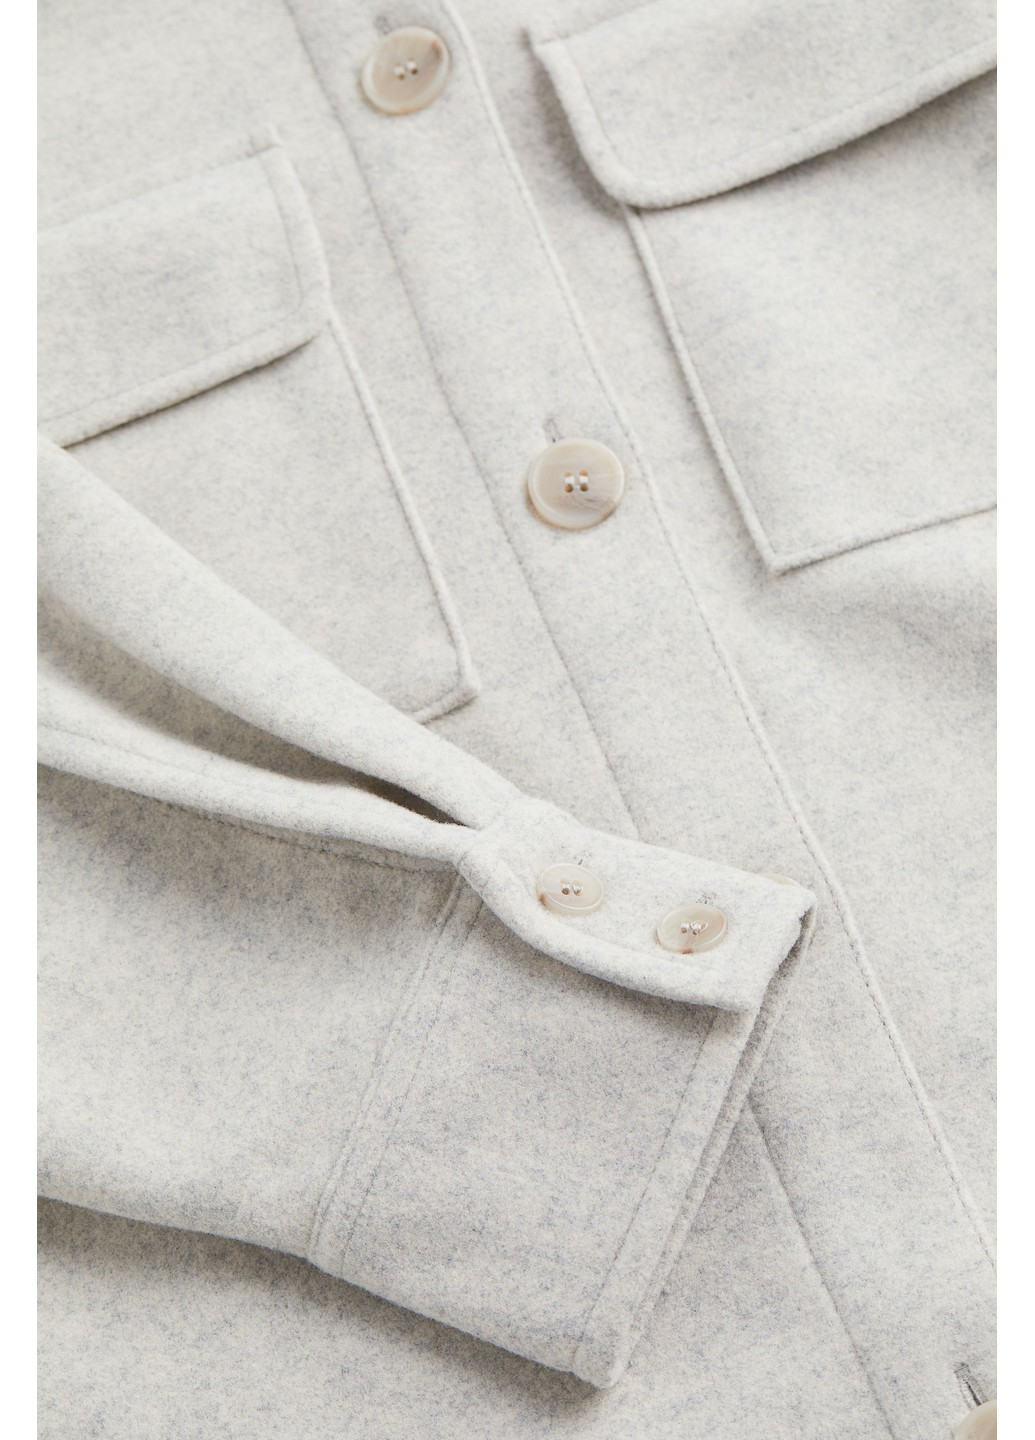 Сіра зимня куртка-сорочка H&M